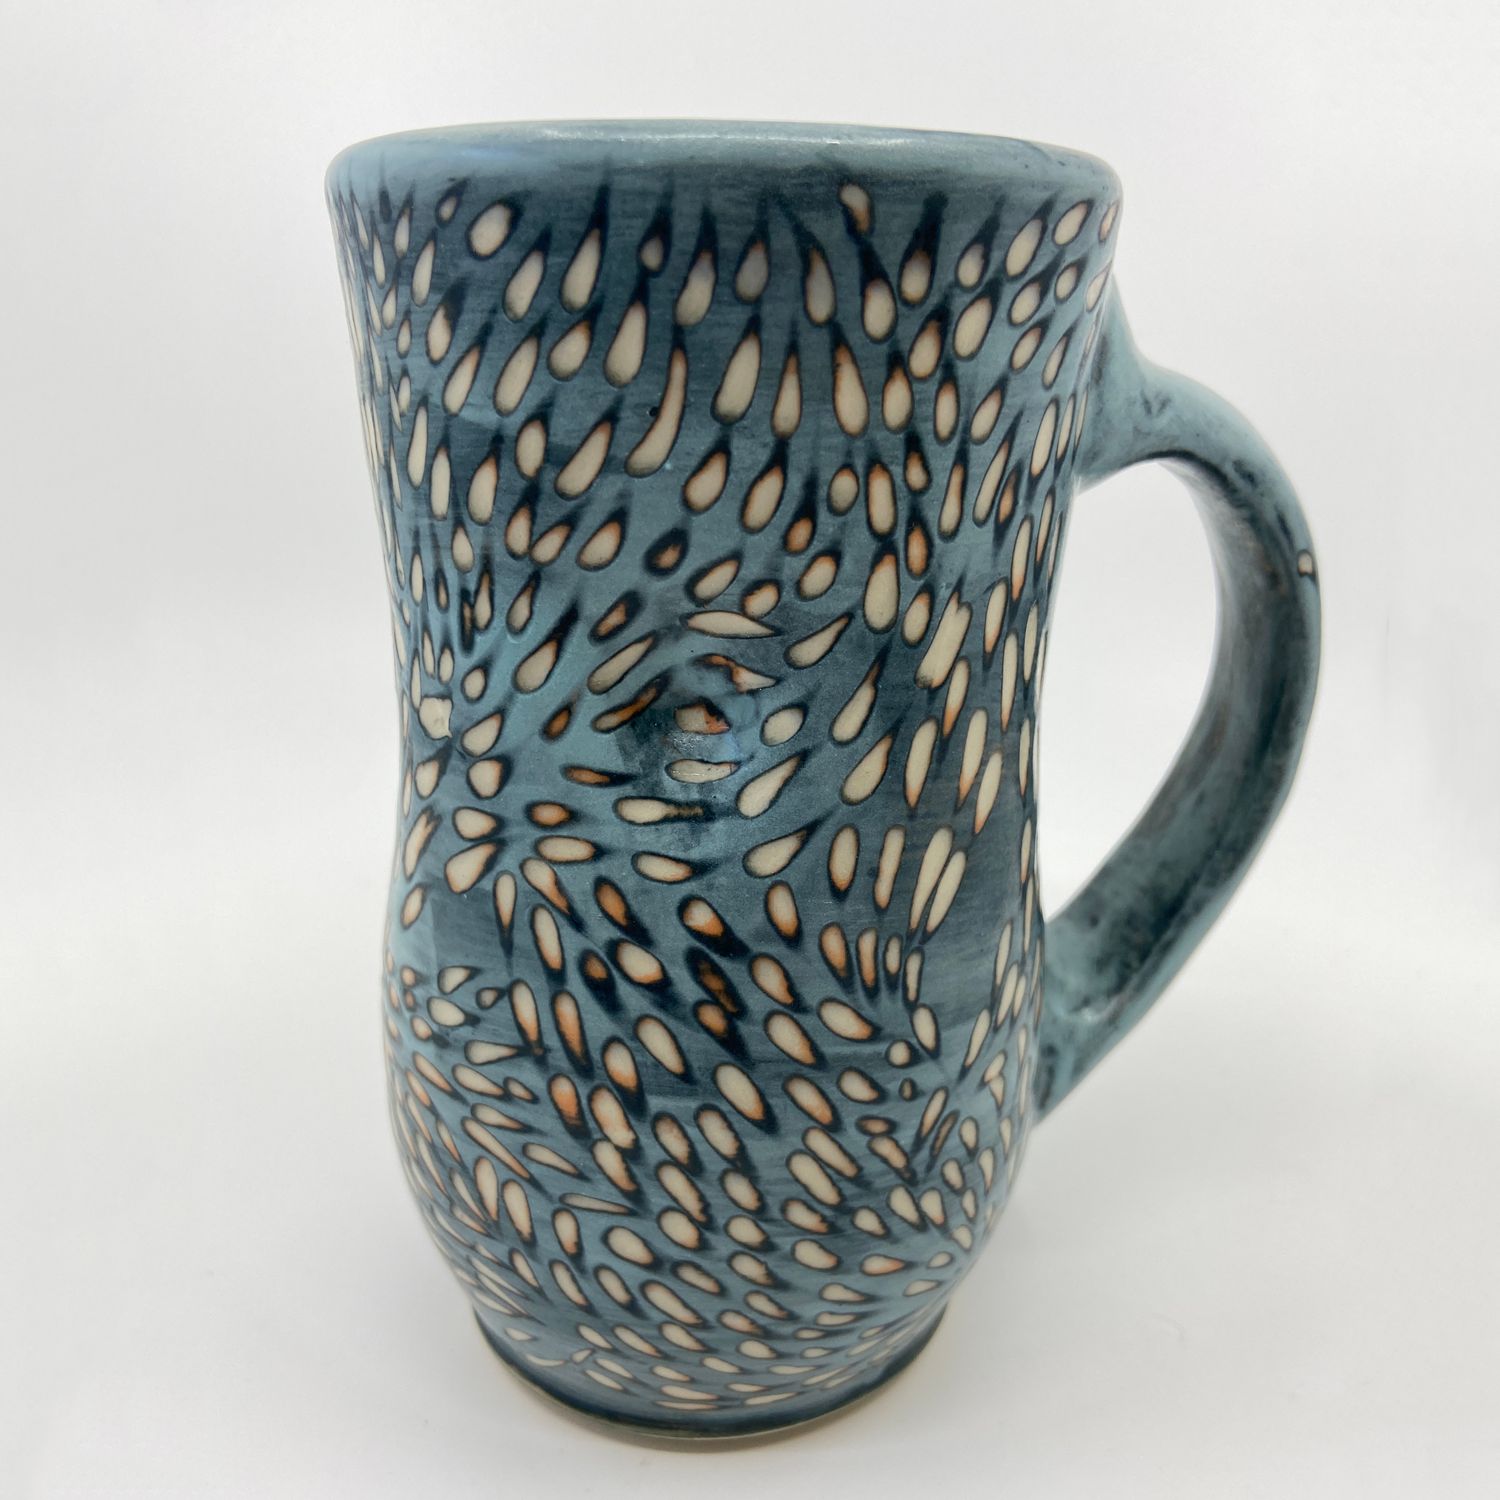 Teresa Dunlop: Carved Dimple Mug Product Image 1 of 1